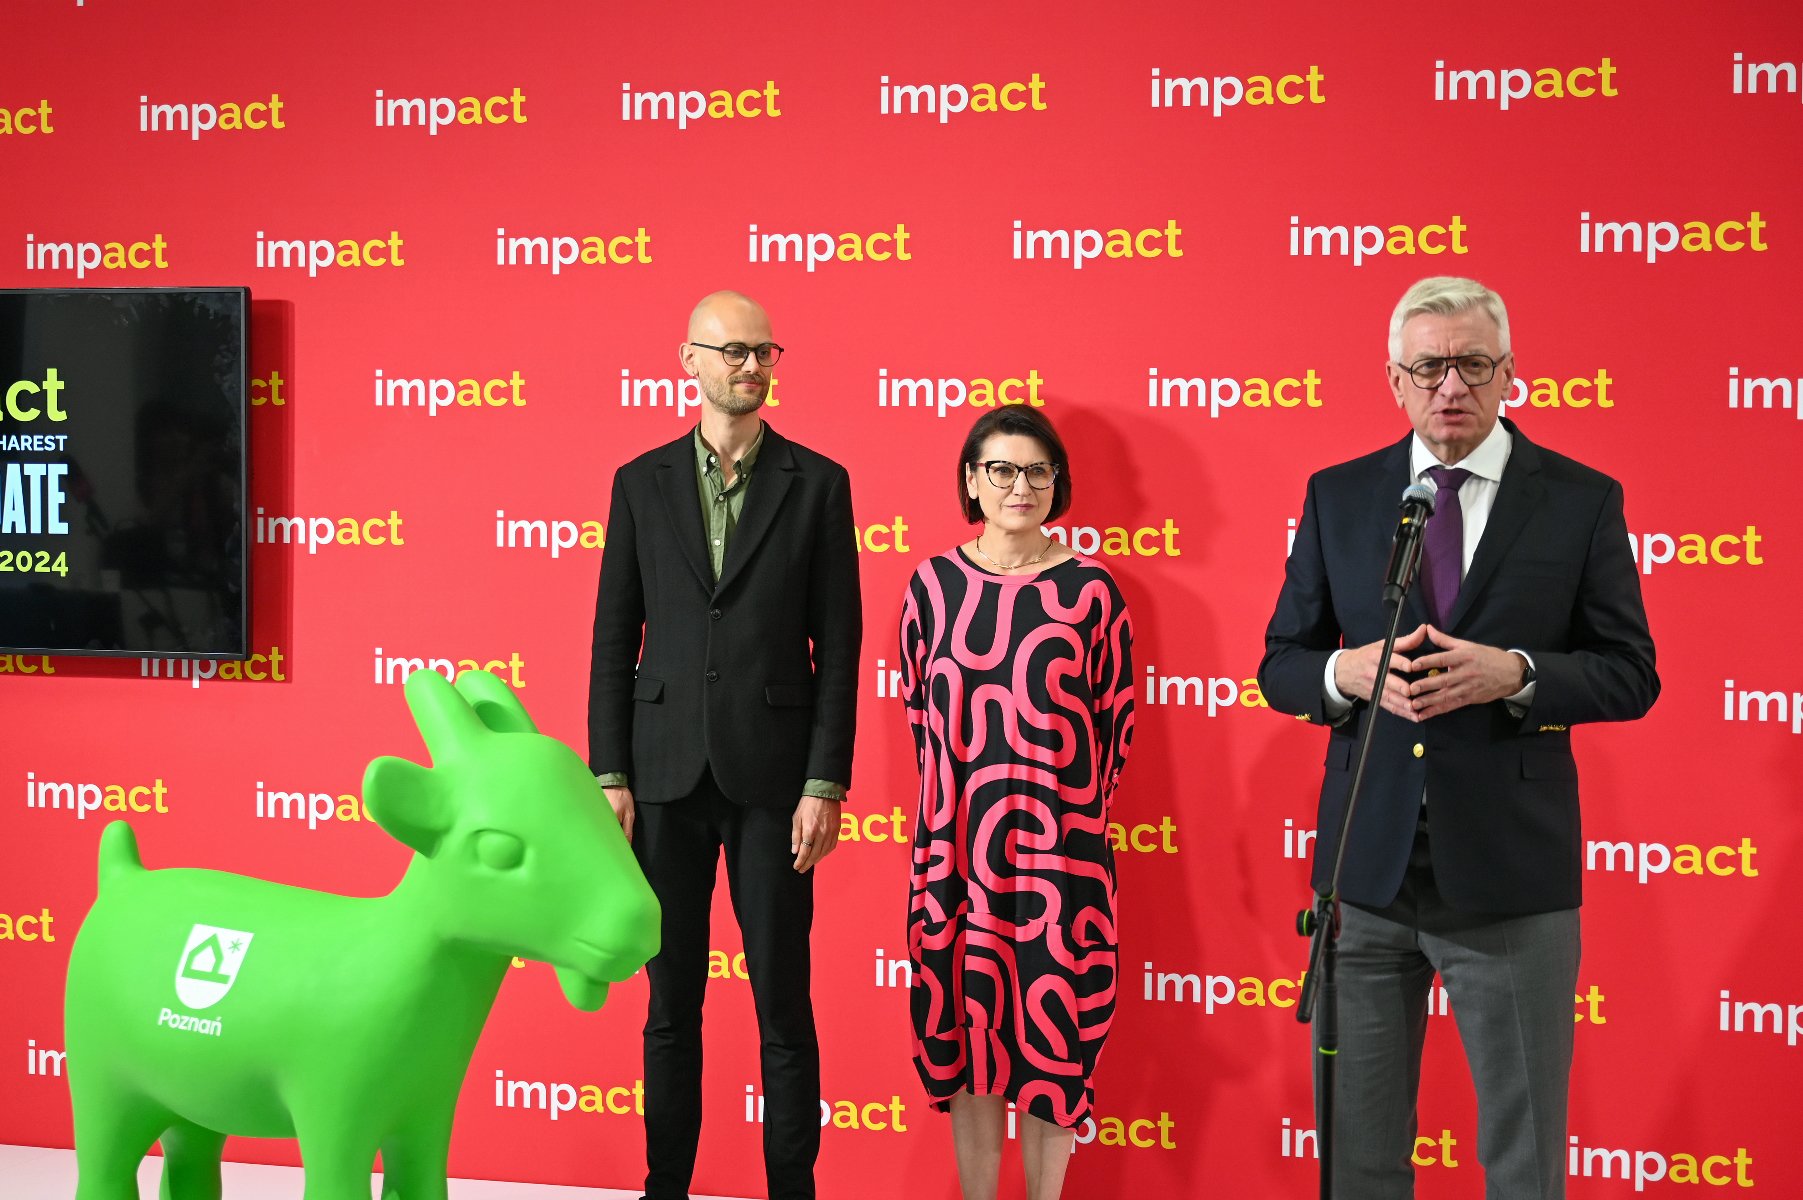 Prezydent Jacek Jaśkowiak przemawia podczas międzynarodowego kongresu "Impact'24". Obok niego stoją dwie osoby: kobieta i mężczyzna. Na dole po lewej stronie zielona figura koziołka z nowym logo. - grafika artykułu